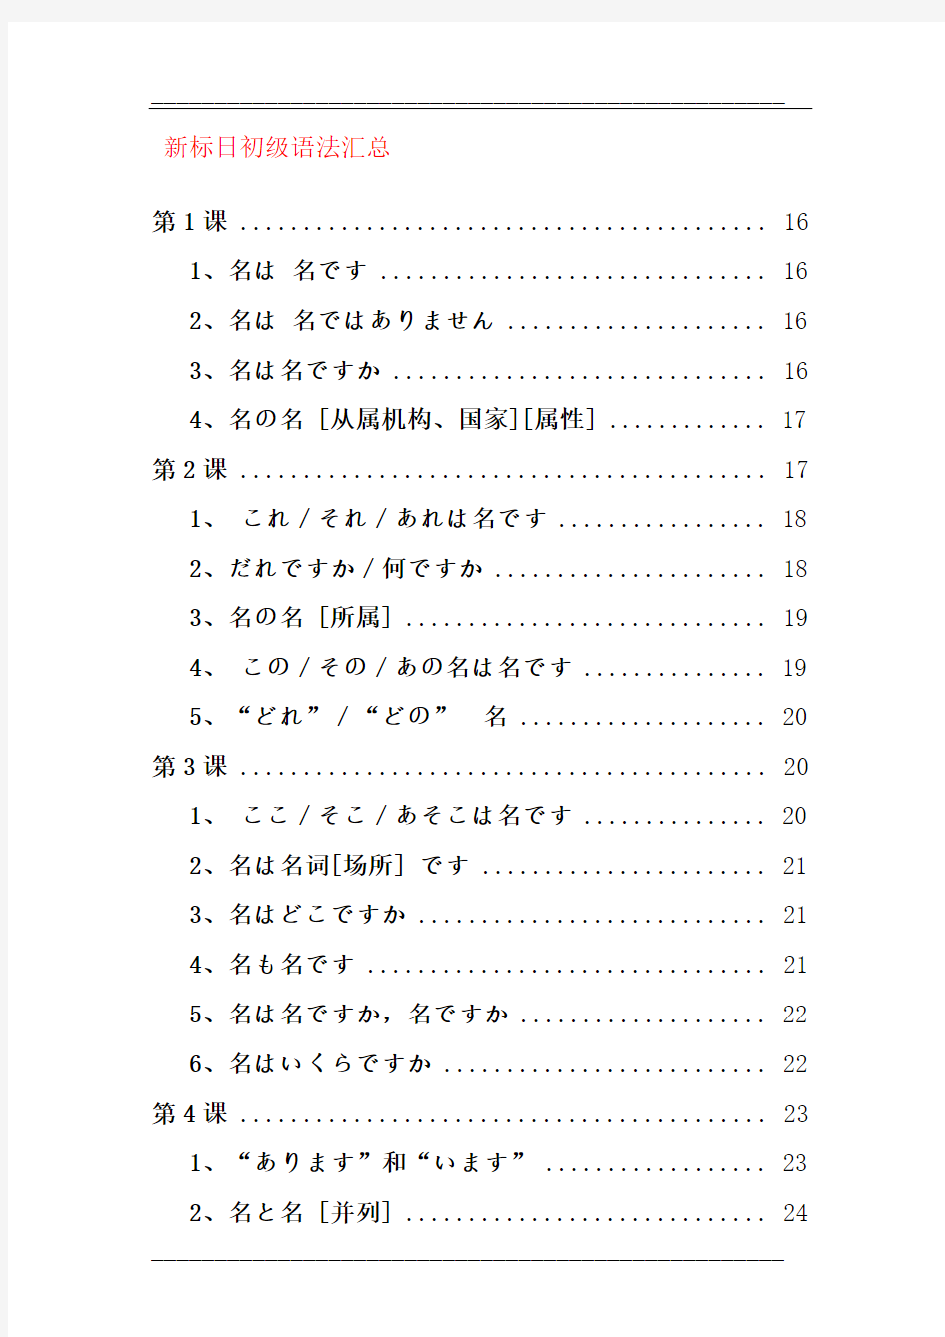 【精品】新版标准日本语-初级-语法汇总